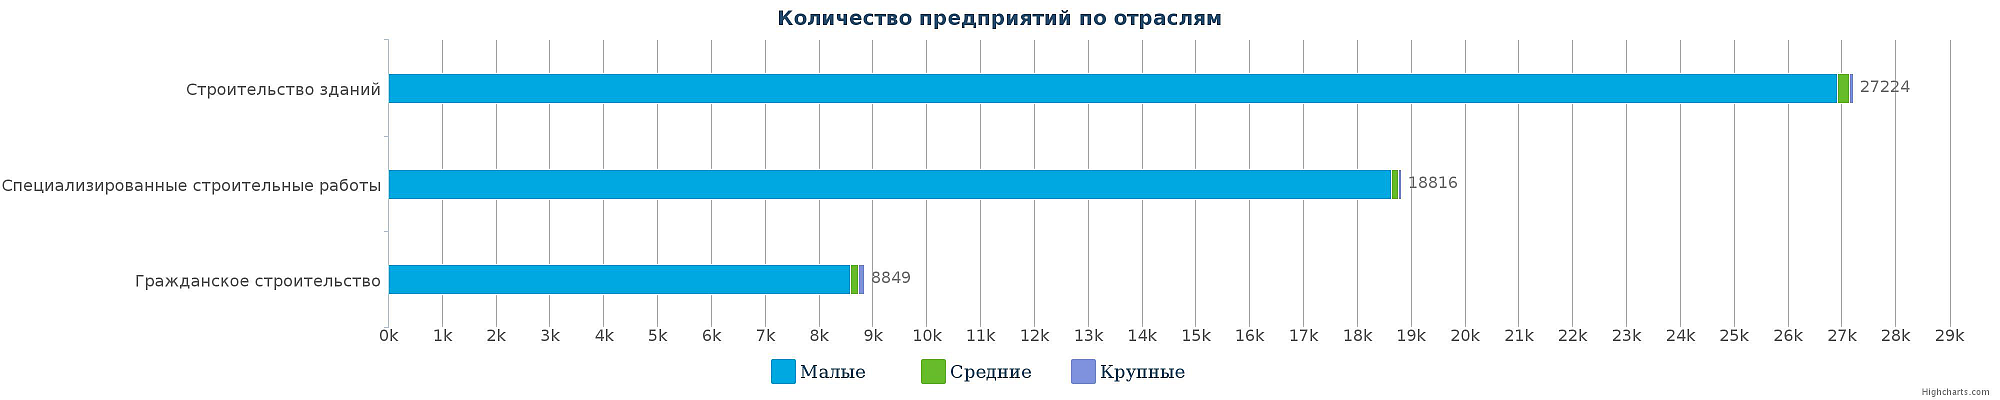 Строительные компании Казахстана по отраслям